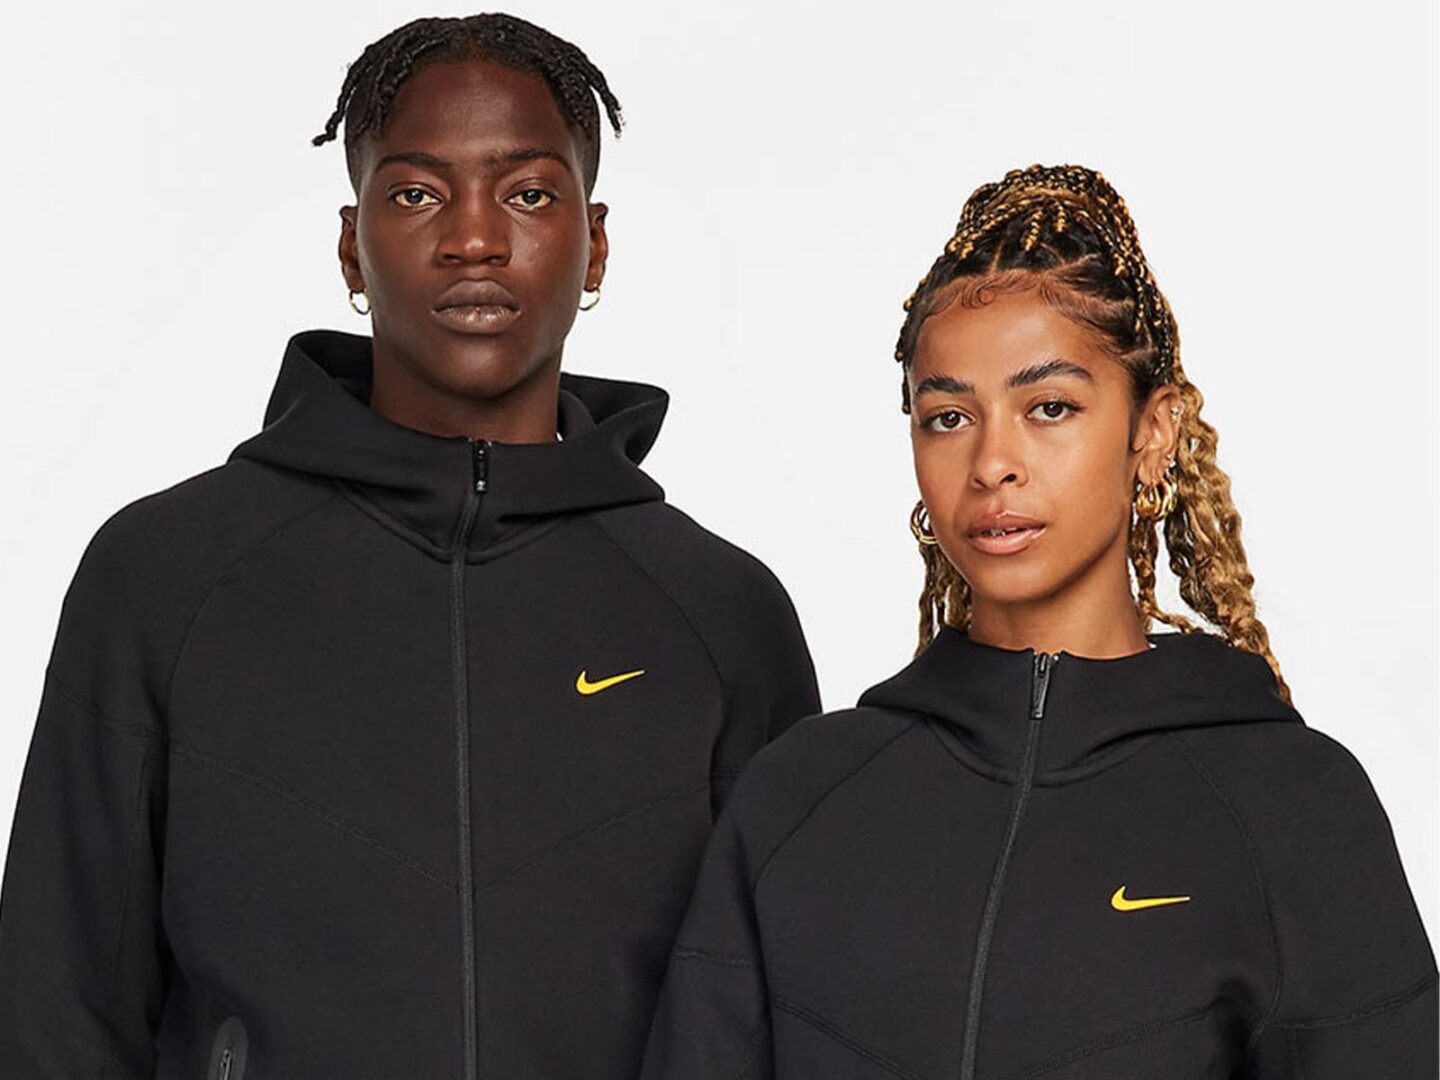 Nike NOCTA Tech Fleece selection arrives in black